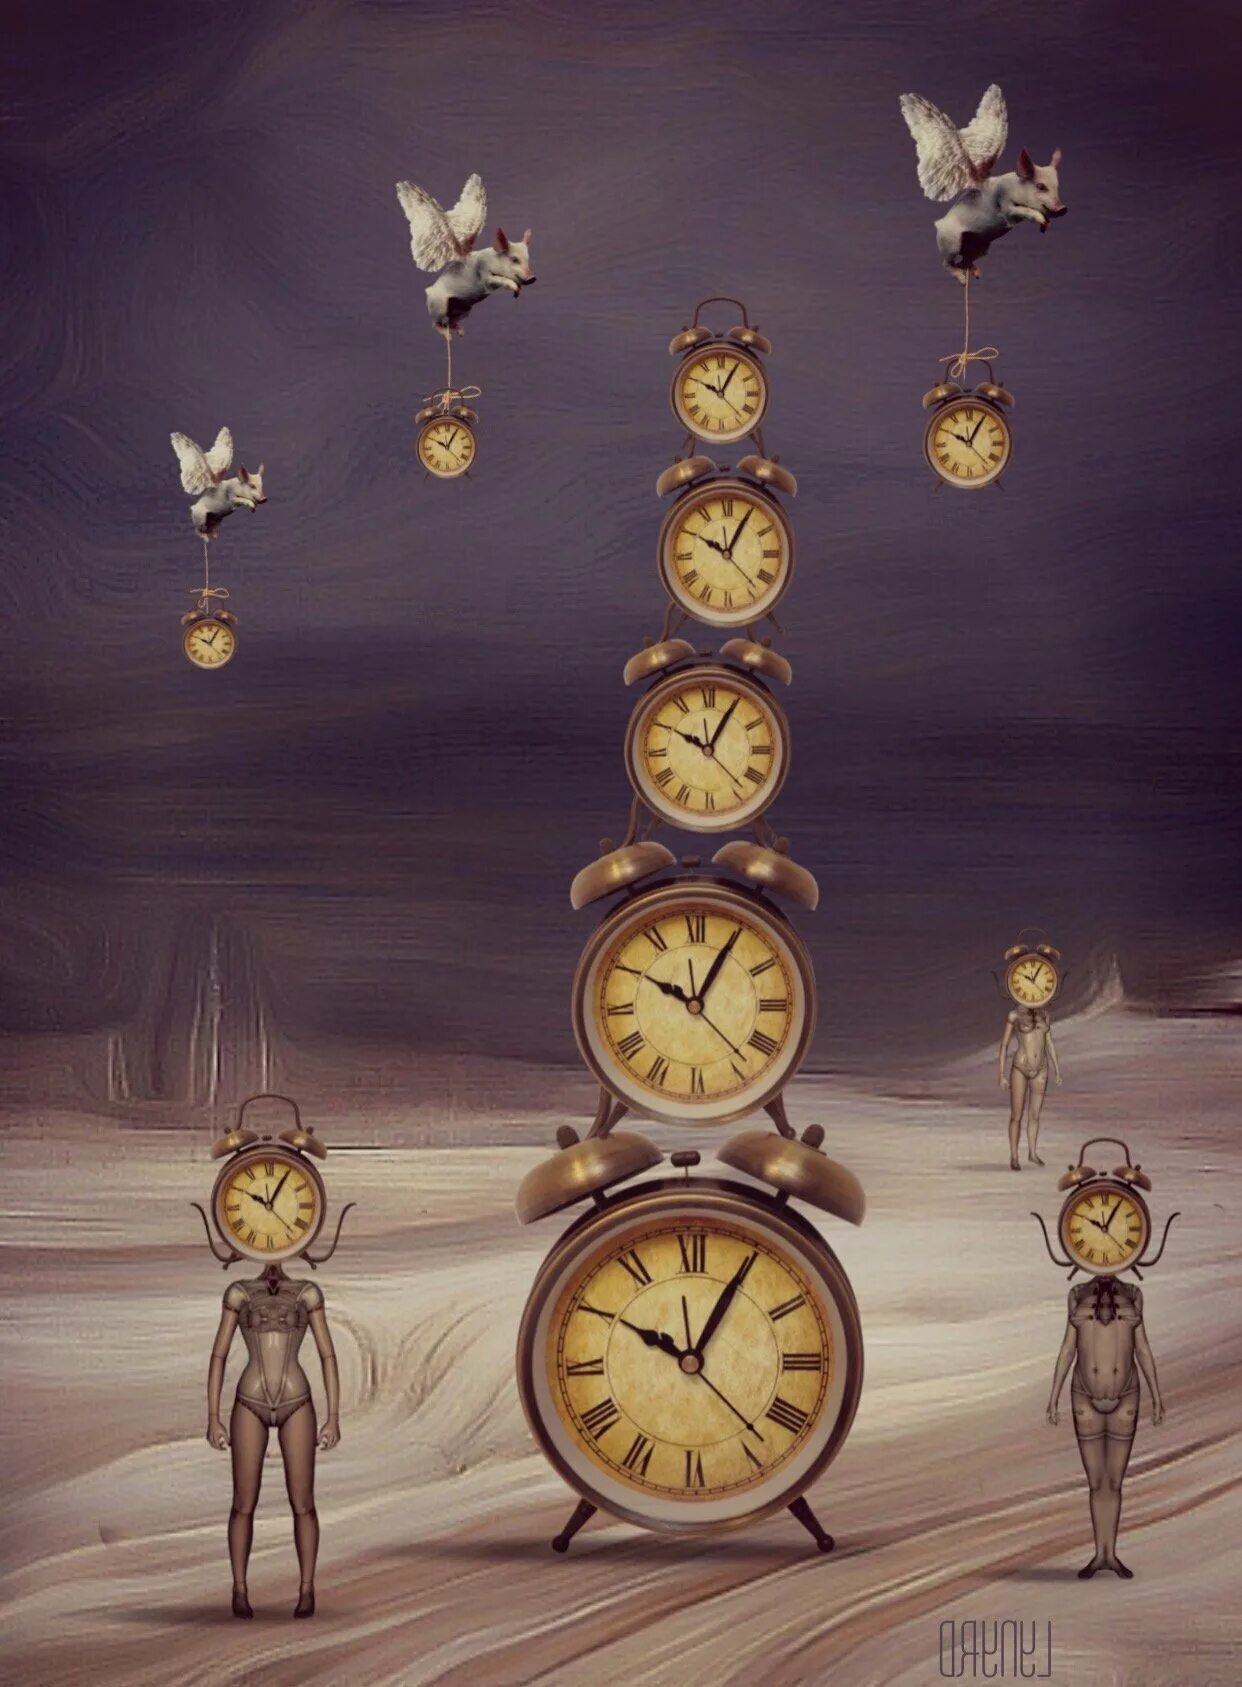 Сказочные часы. Иллюстрации с часами. Старинные часы. Волшебные сказочные часы.